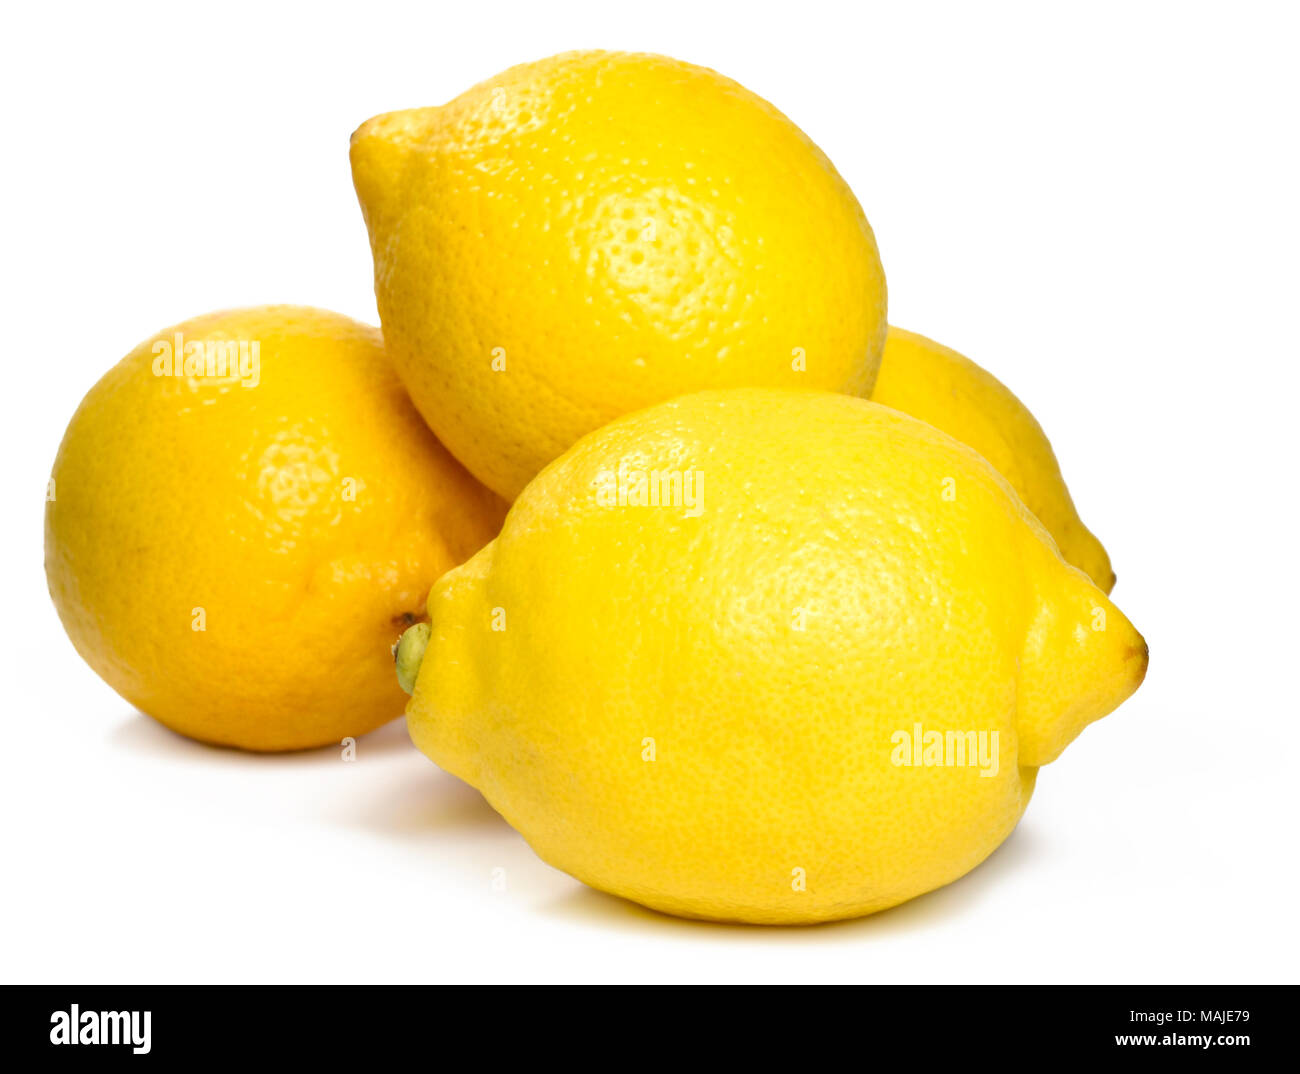 Fresh lemons, isolated on white background. Arrangement of ripe citrus fruits. Stock Photo